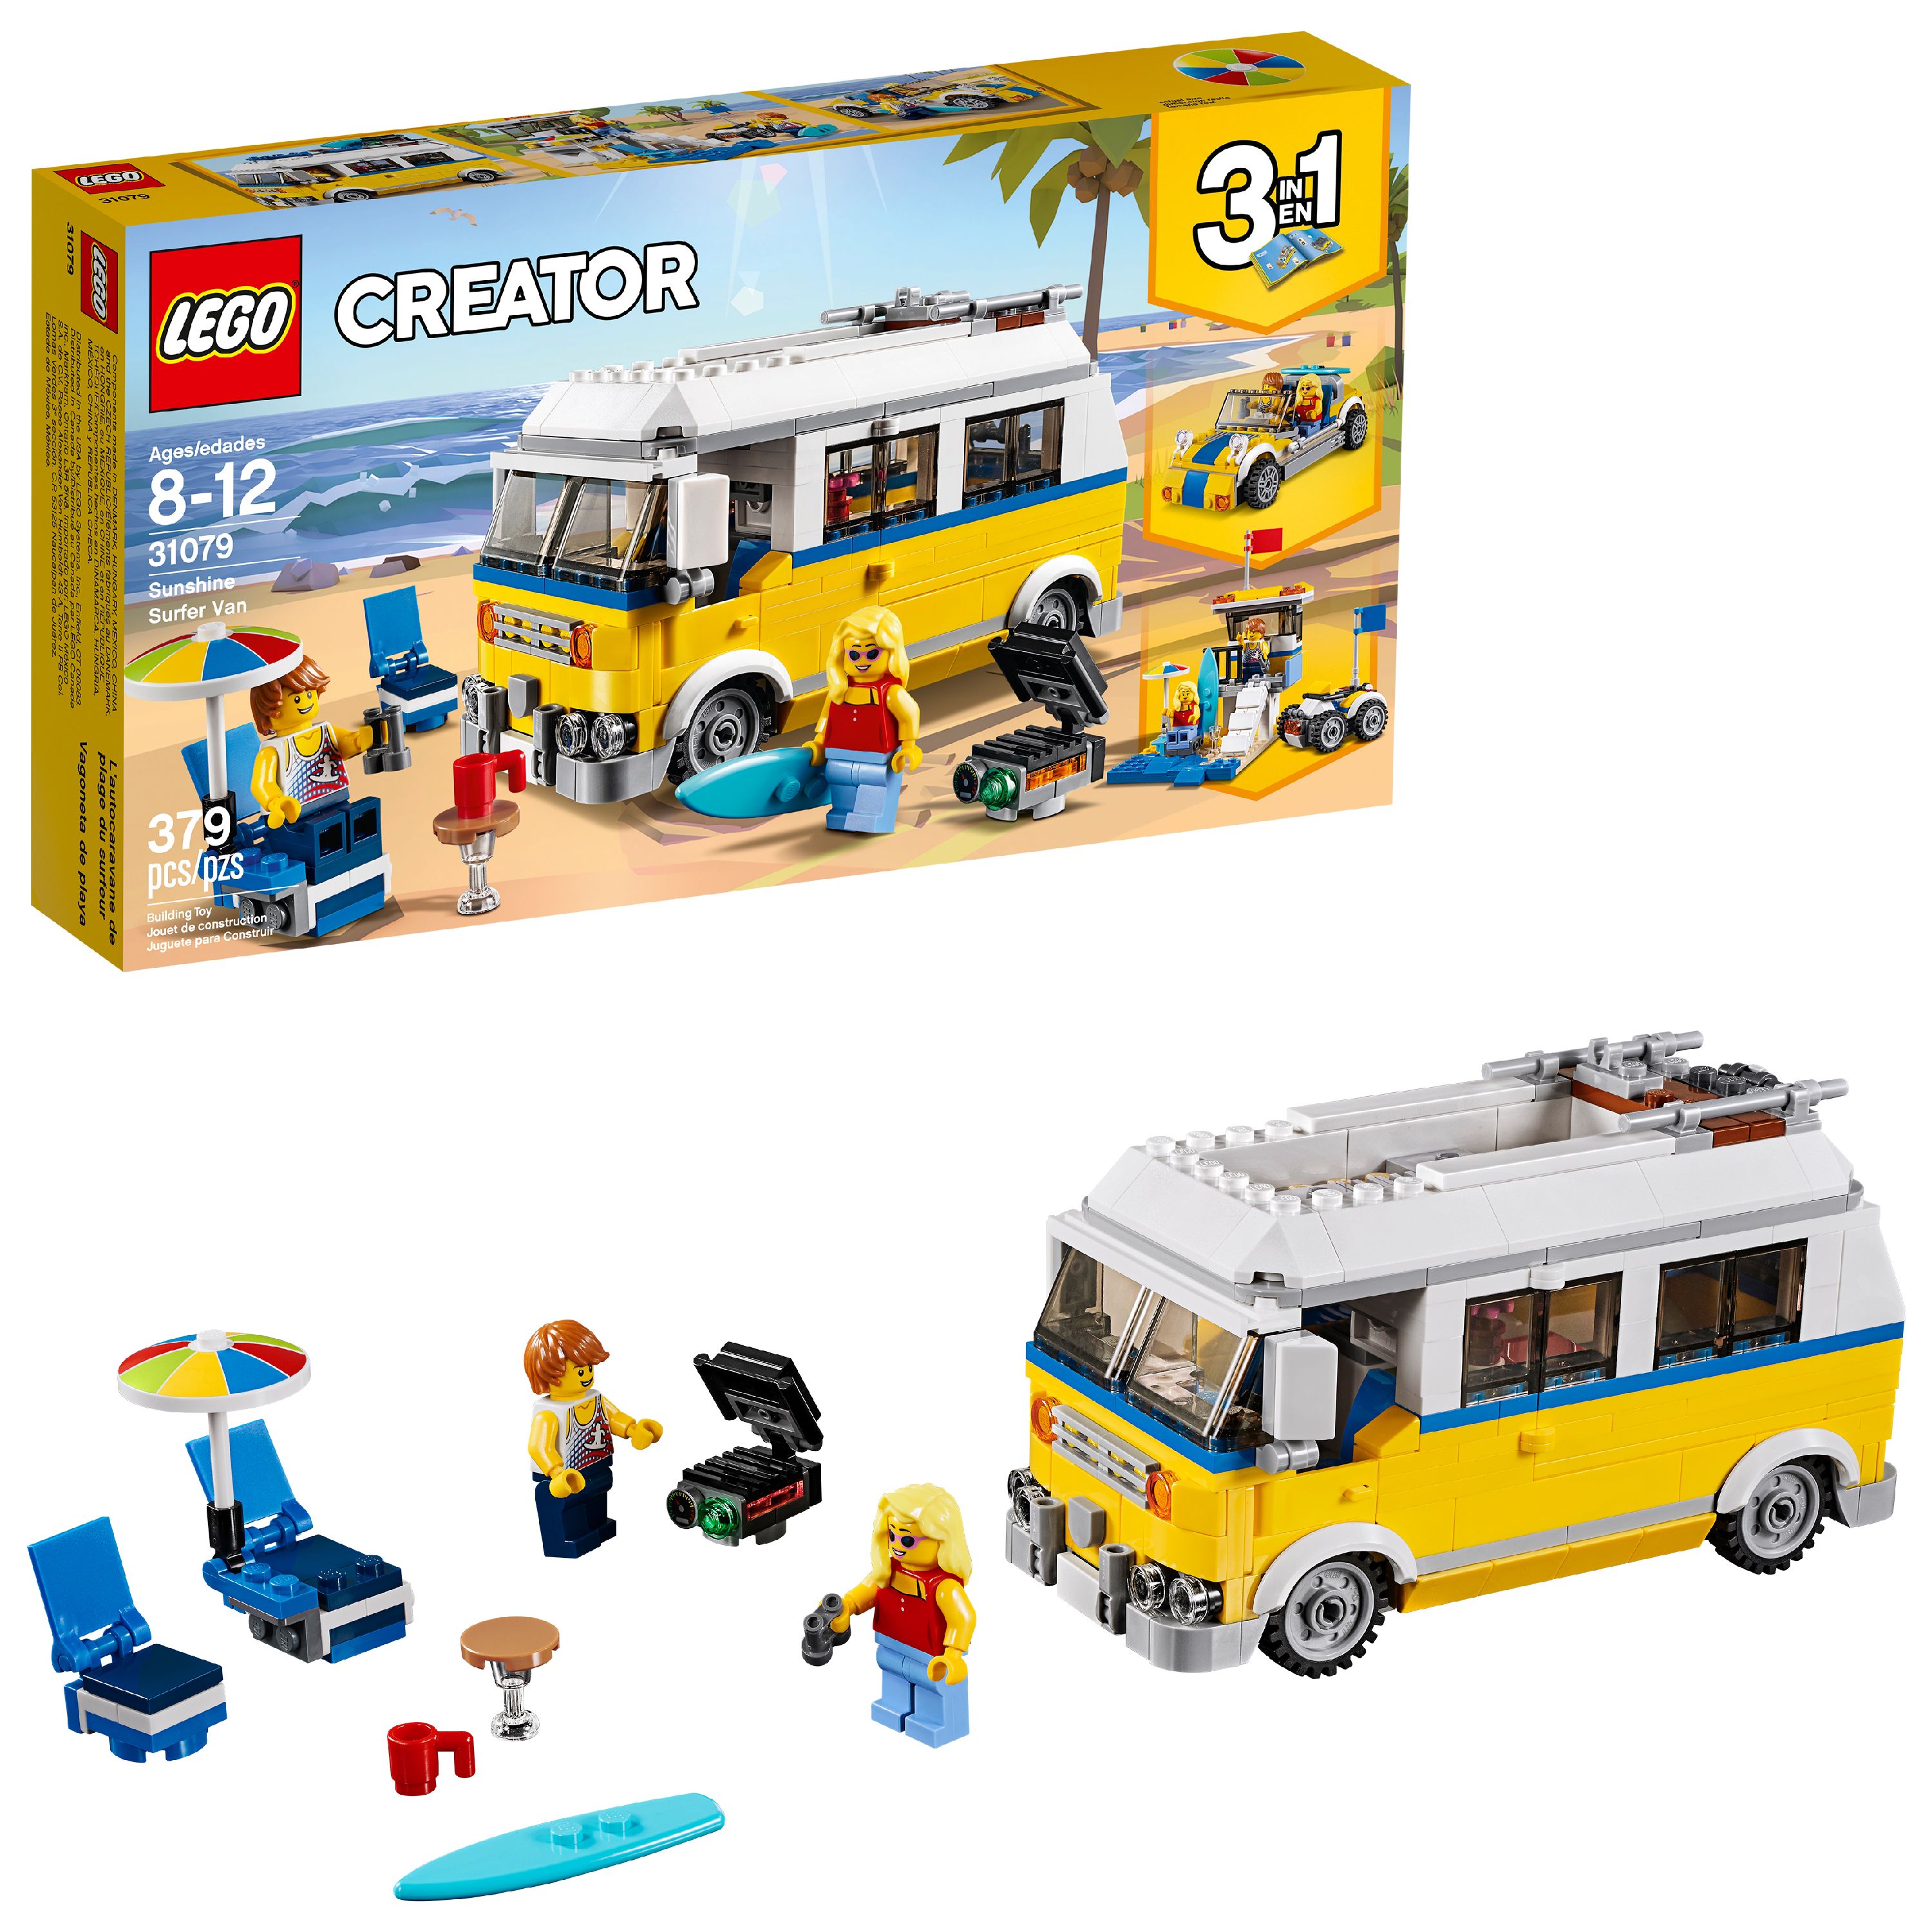 LEGO Creator 3in1 Sunshine Surfer Van 31079 Building Set - image 1 of 7